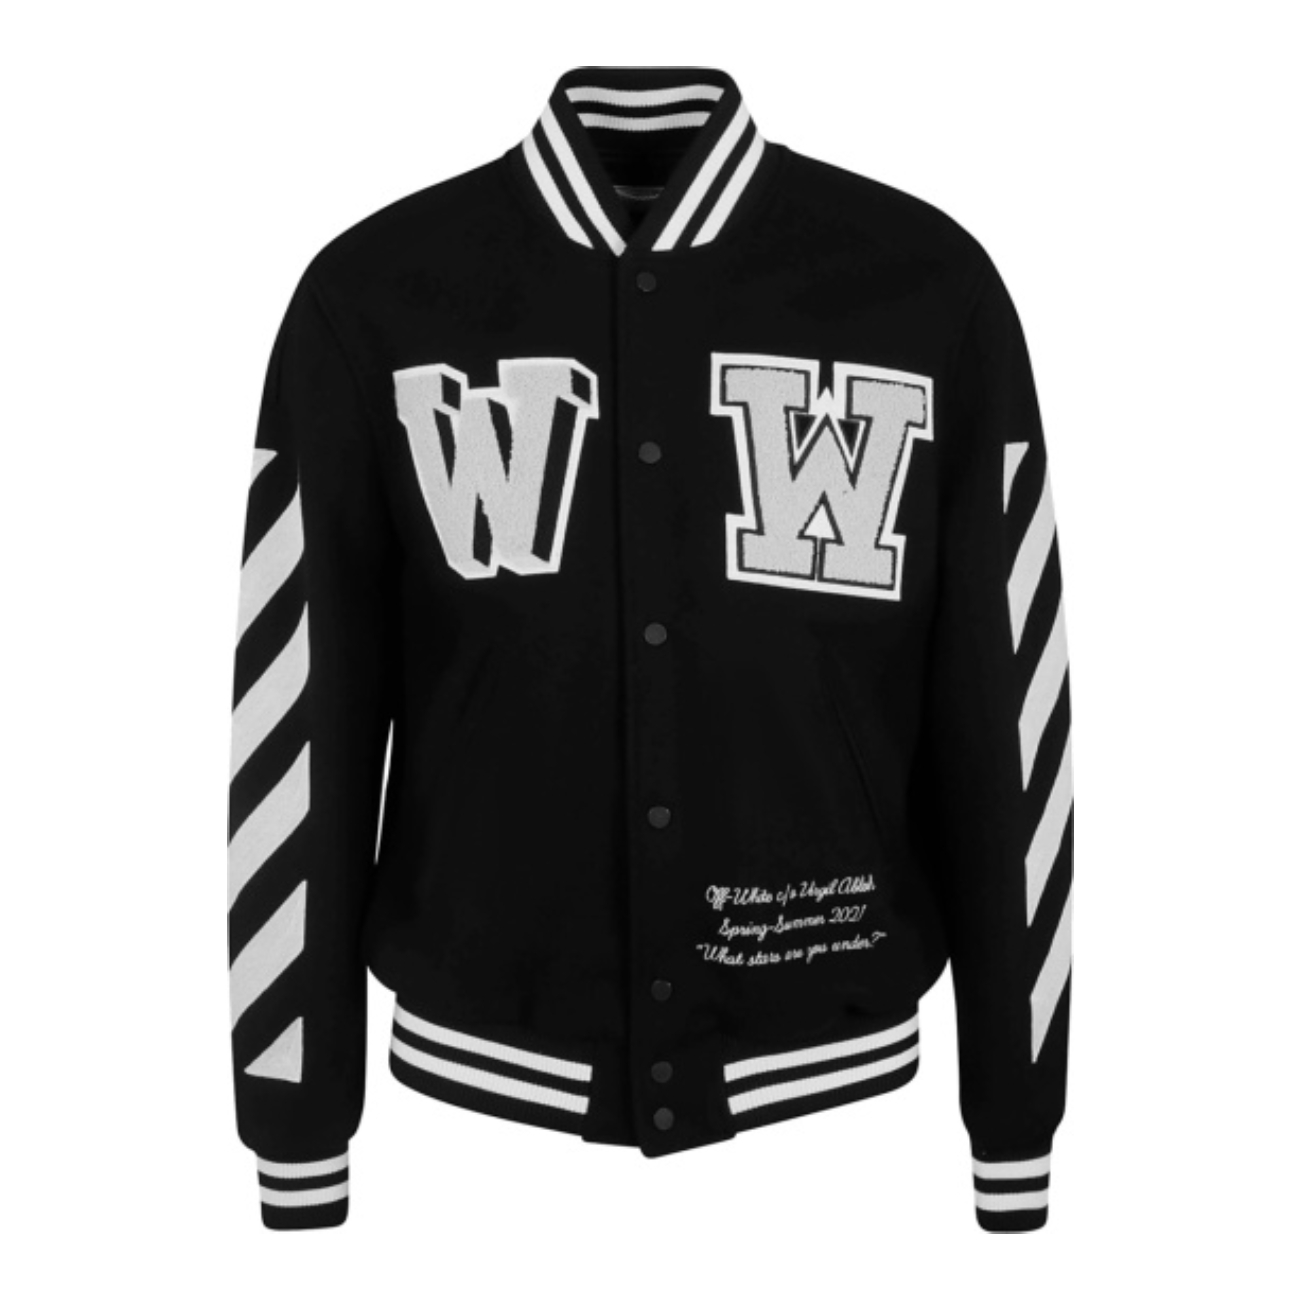 OFF-WHITE Black W W Varsity Jacket